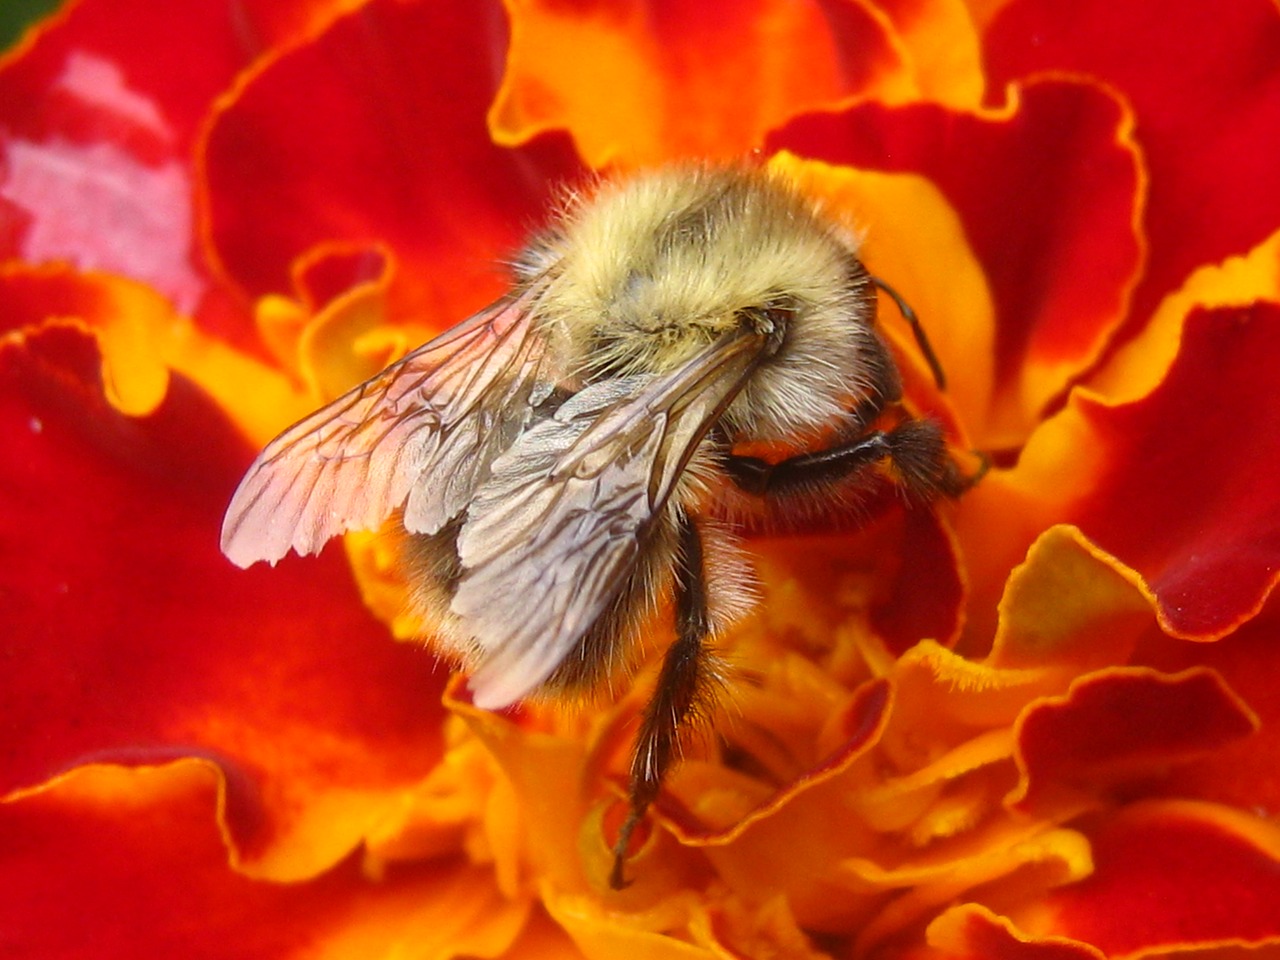 bittern flower gadfly on a flower free photo